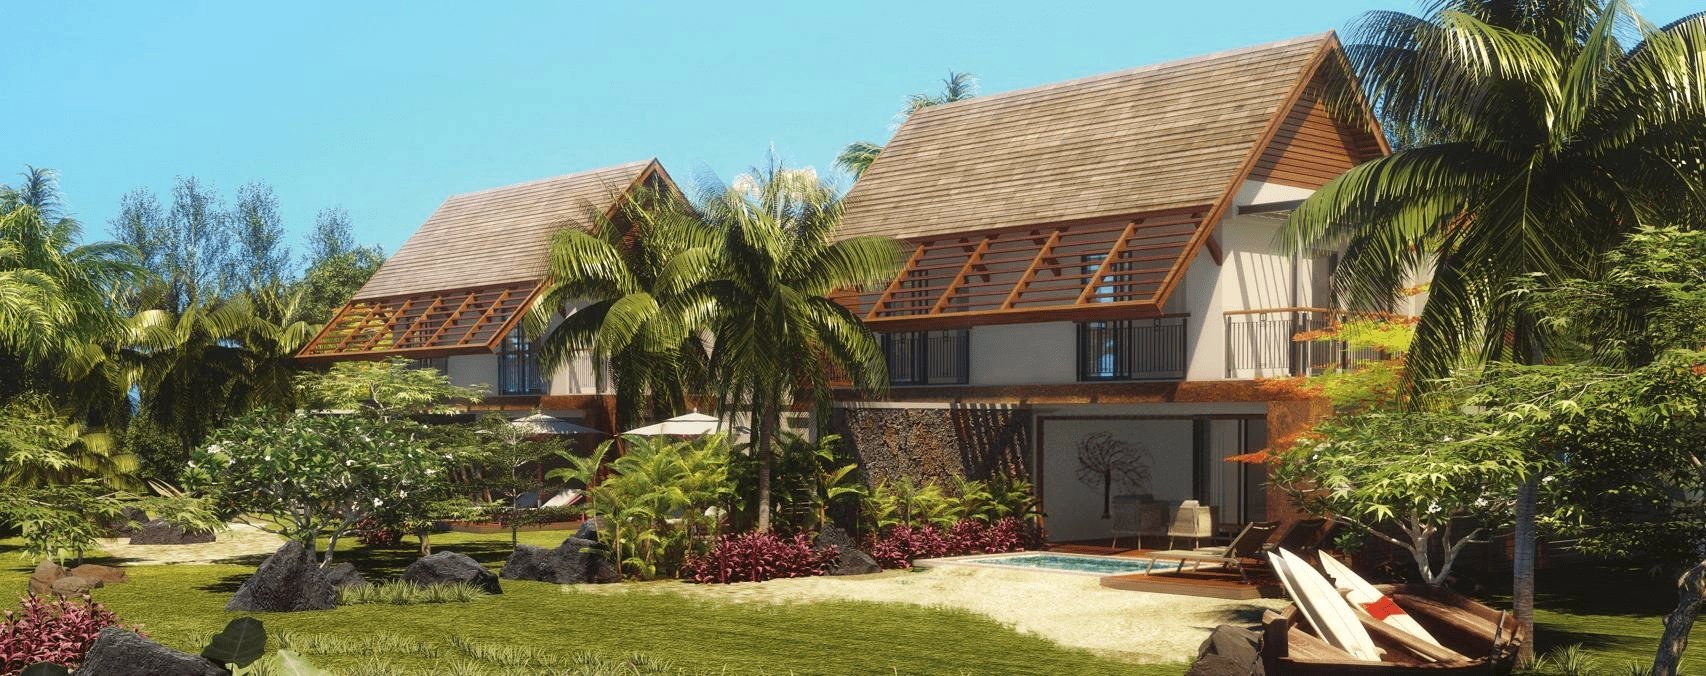 Development Villa - Pointe d'Esny - Mauritius